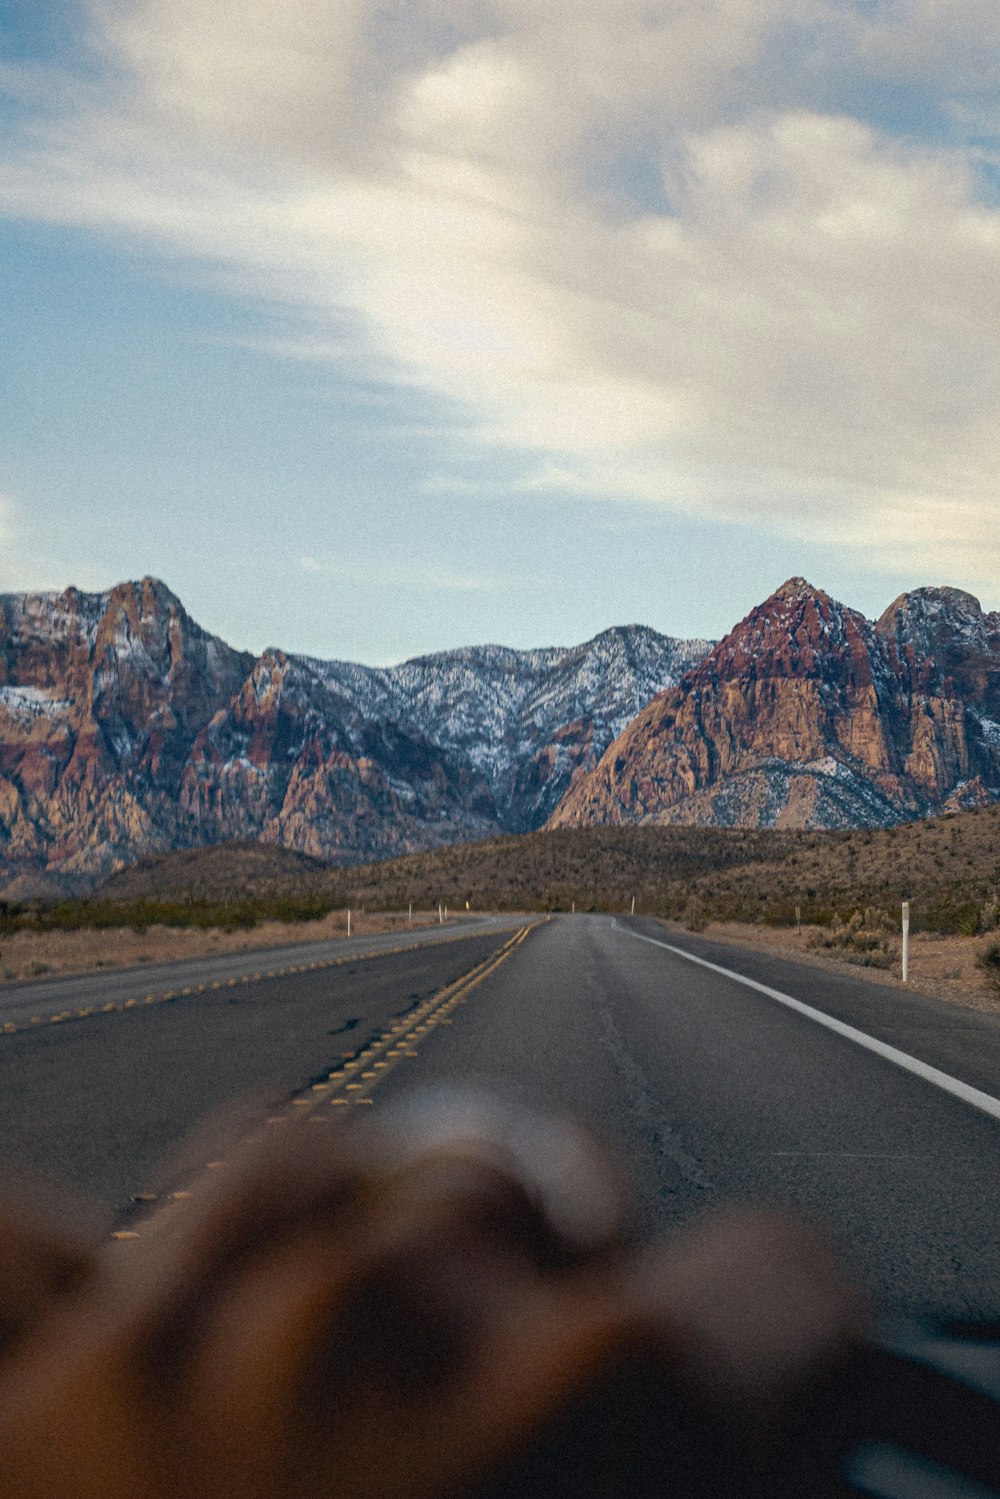 Una persona conduciendo un automóvil en una carretera con montañas en el fondo